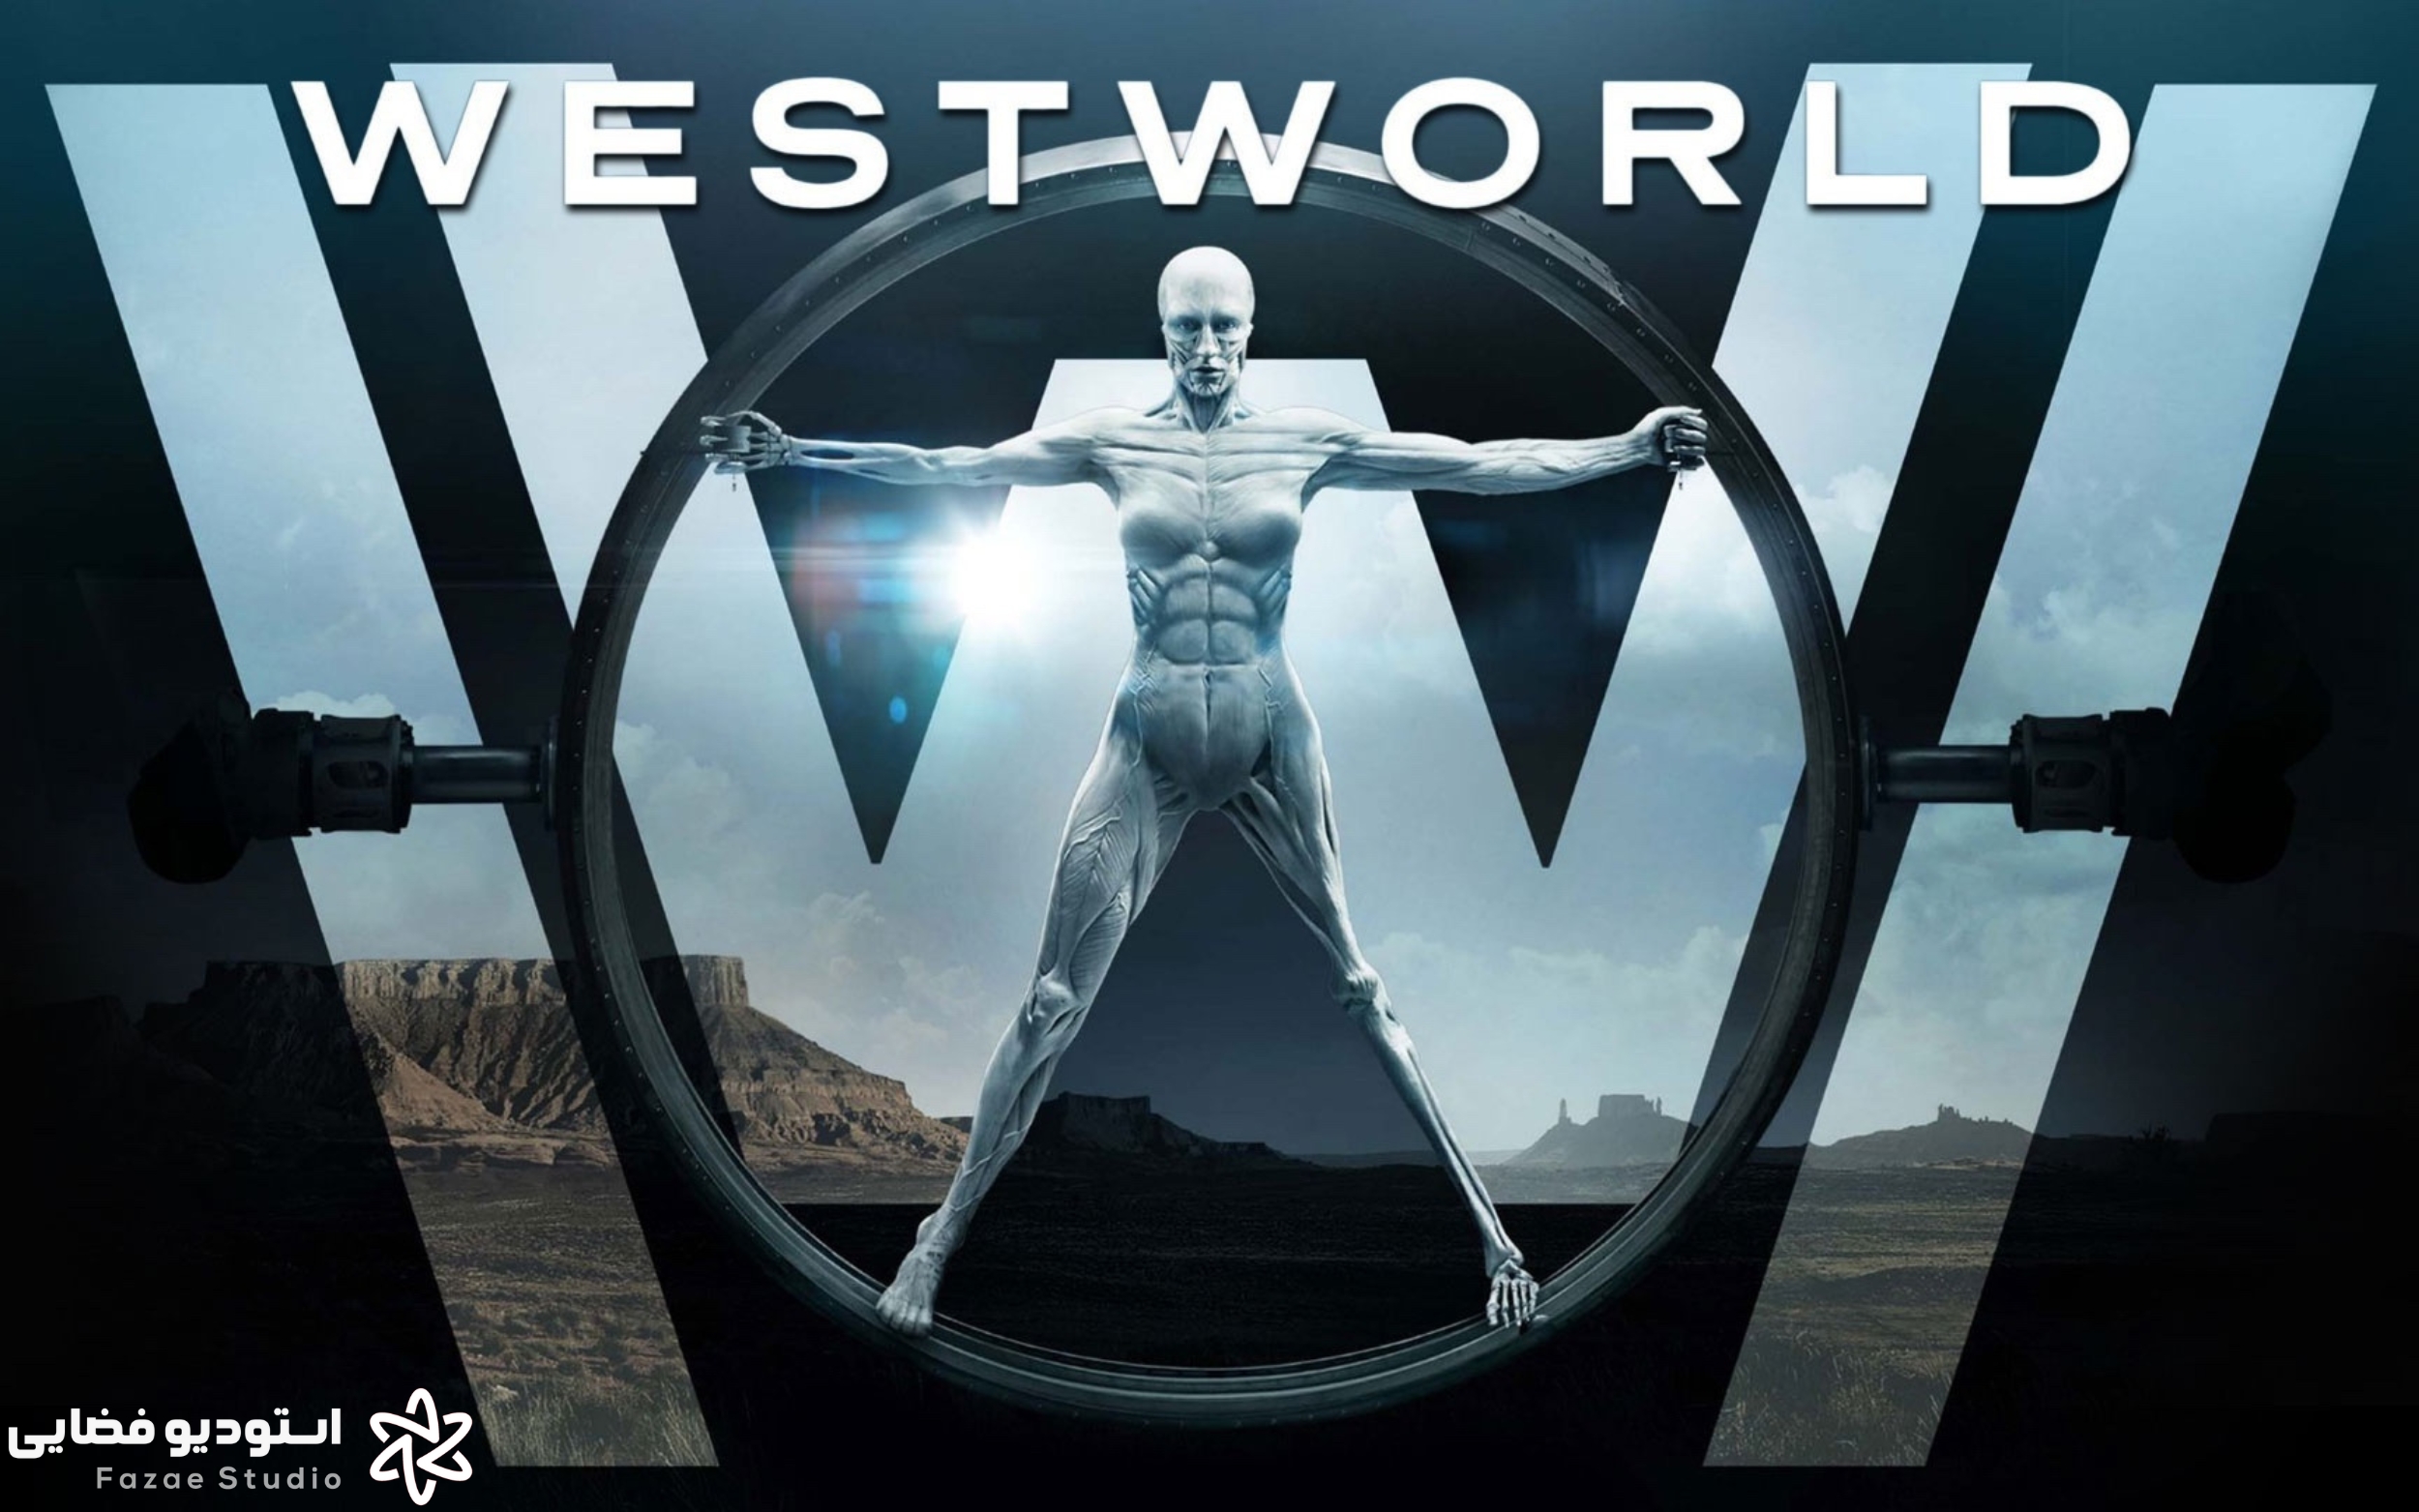 وست ورلد (Westworld)